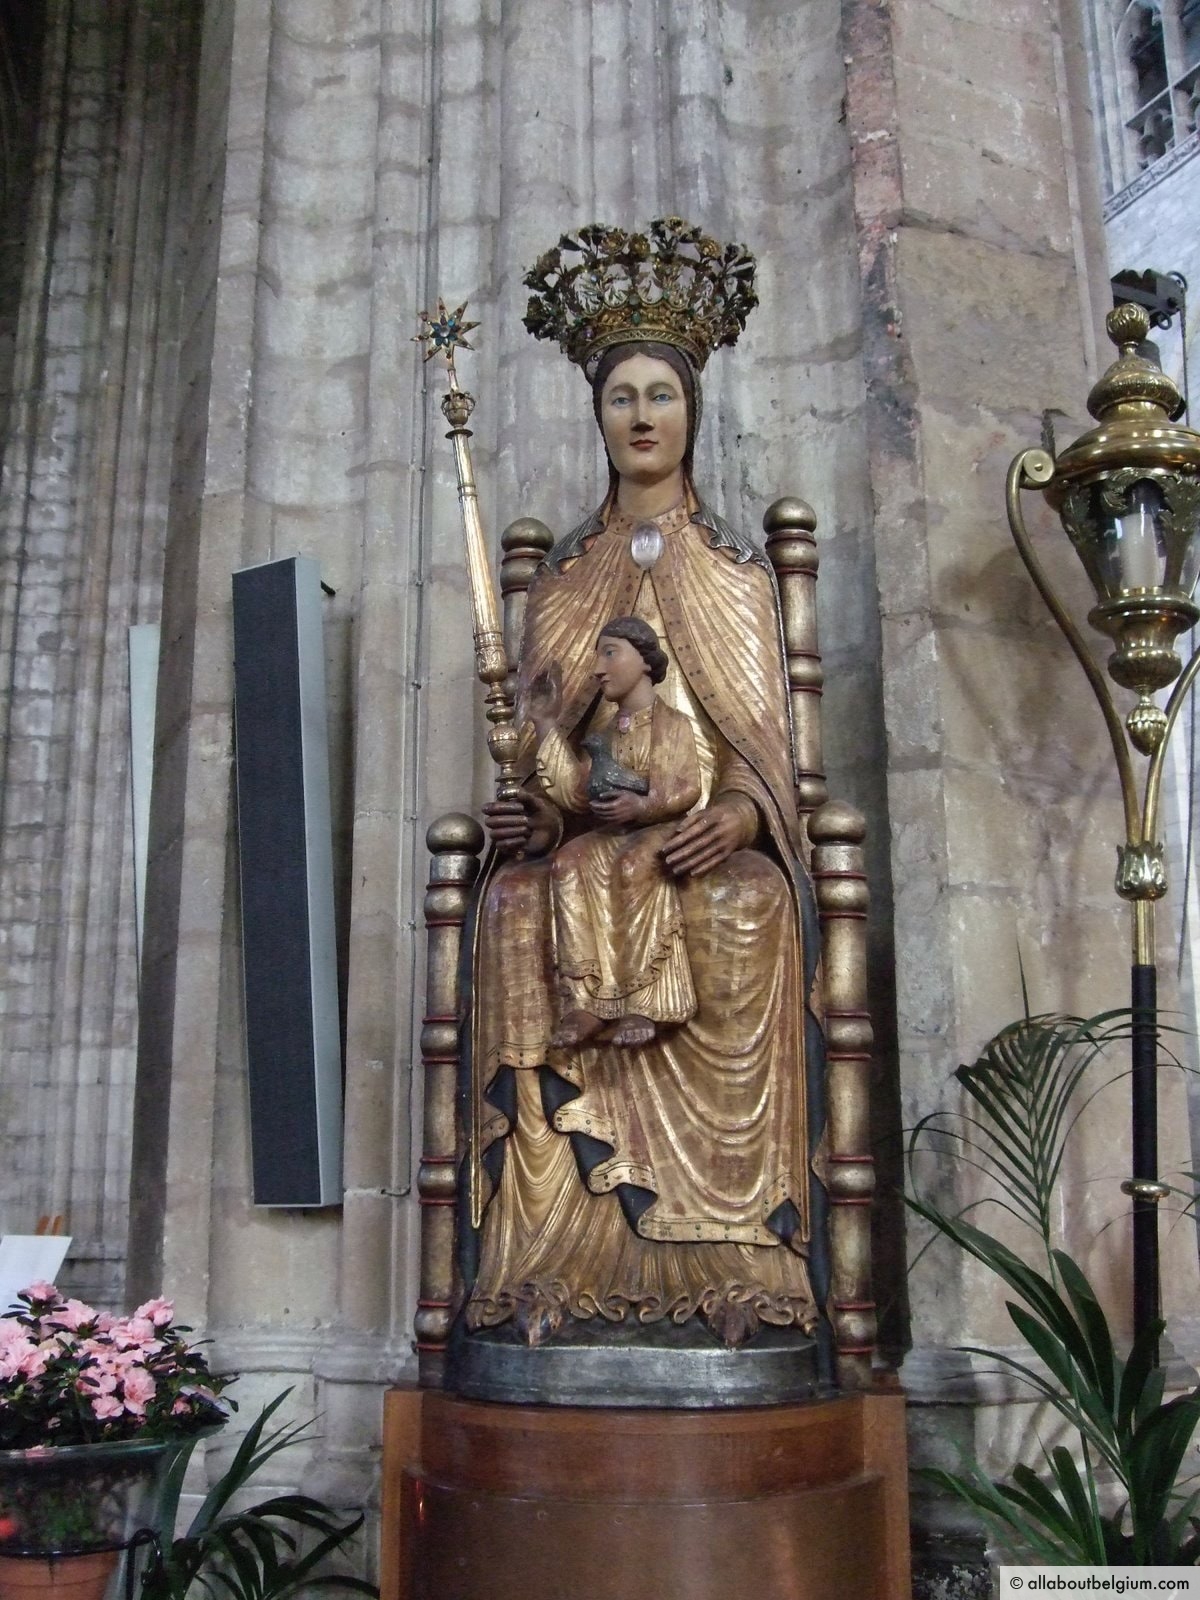 聖母子像はルーヴェン大学のシンボルでもあります。